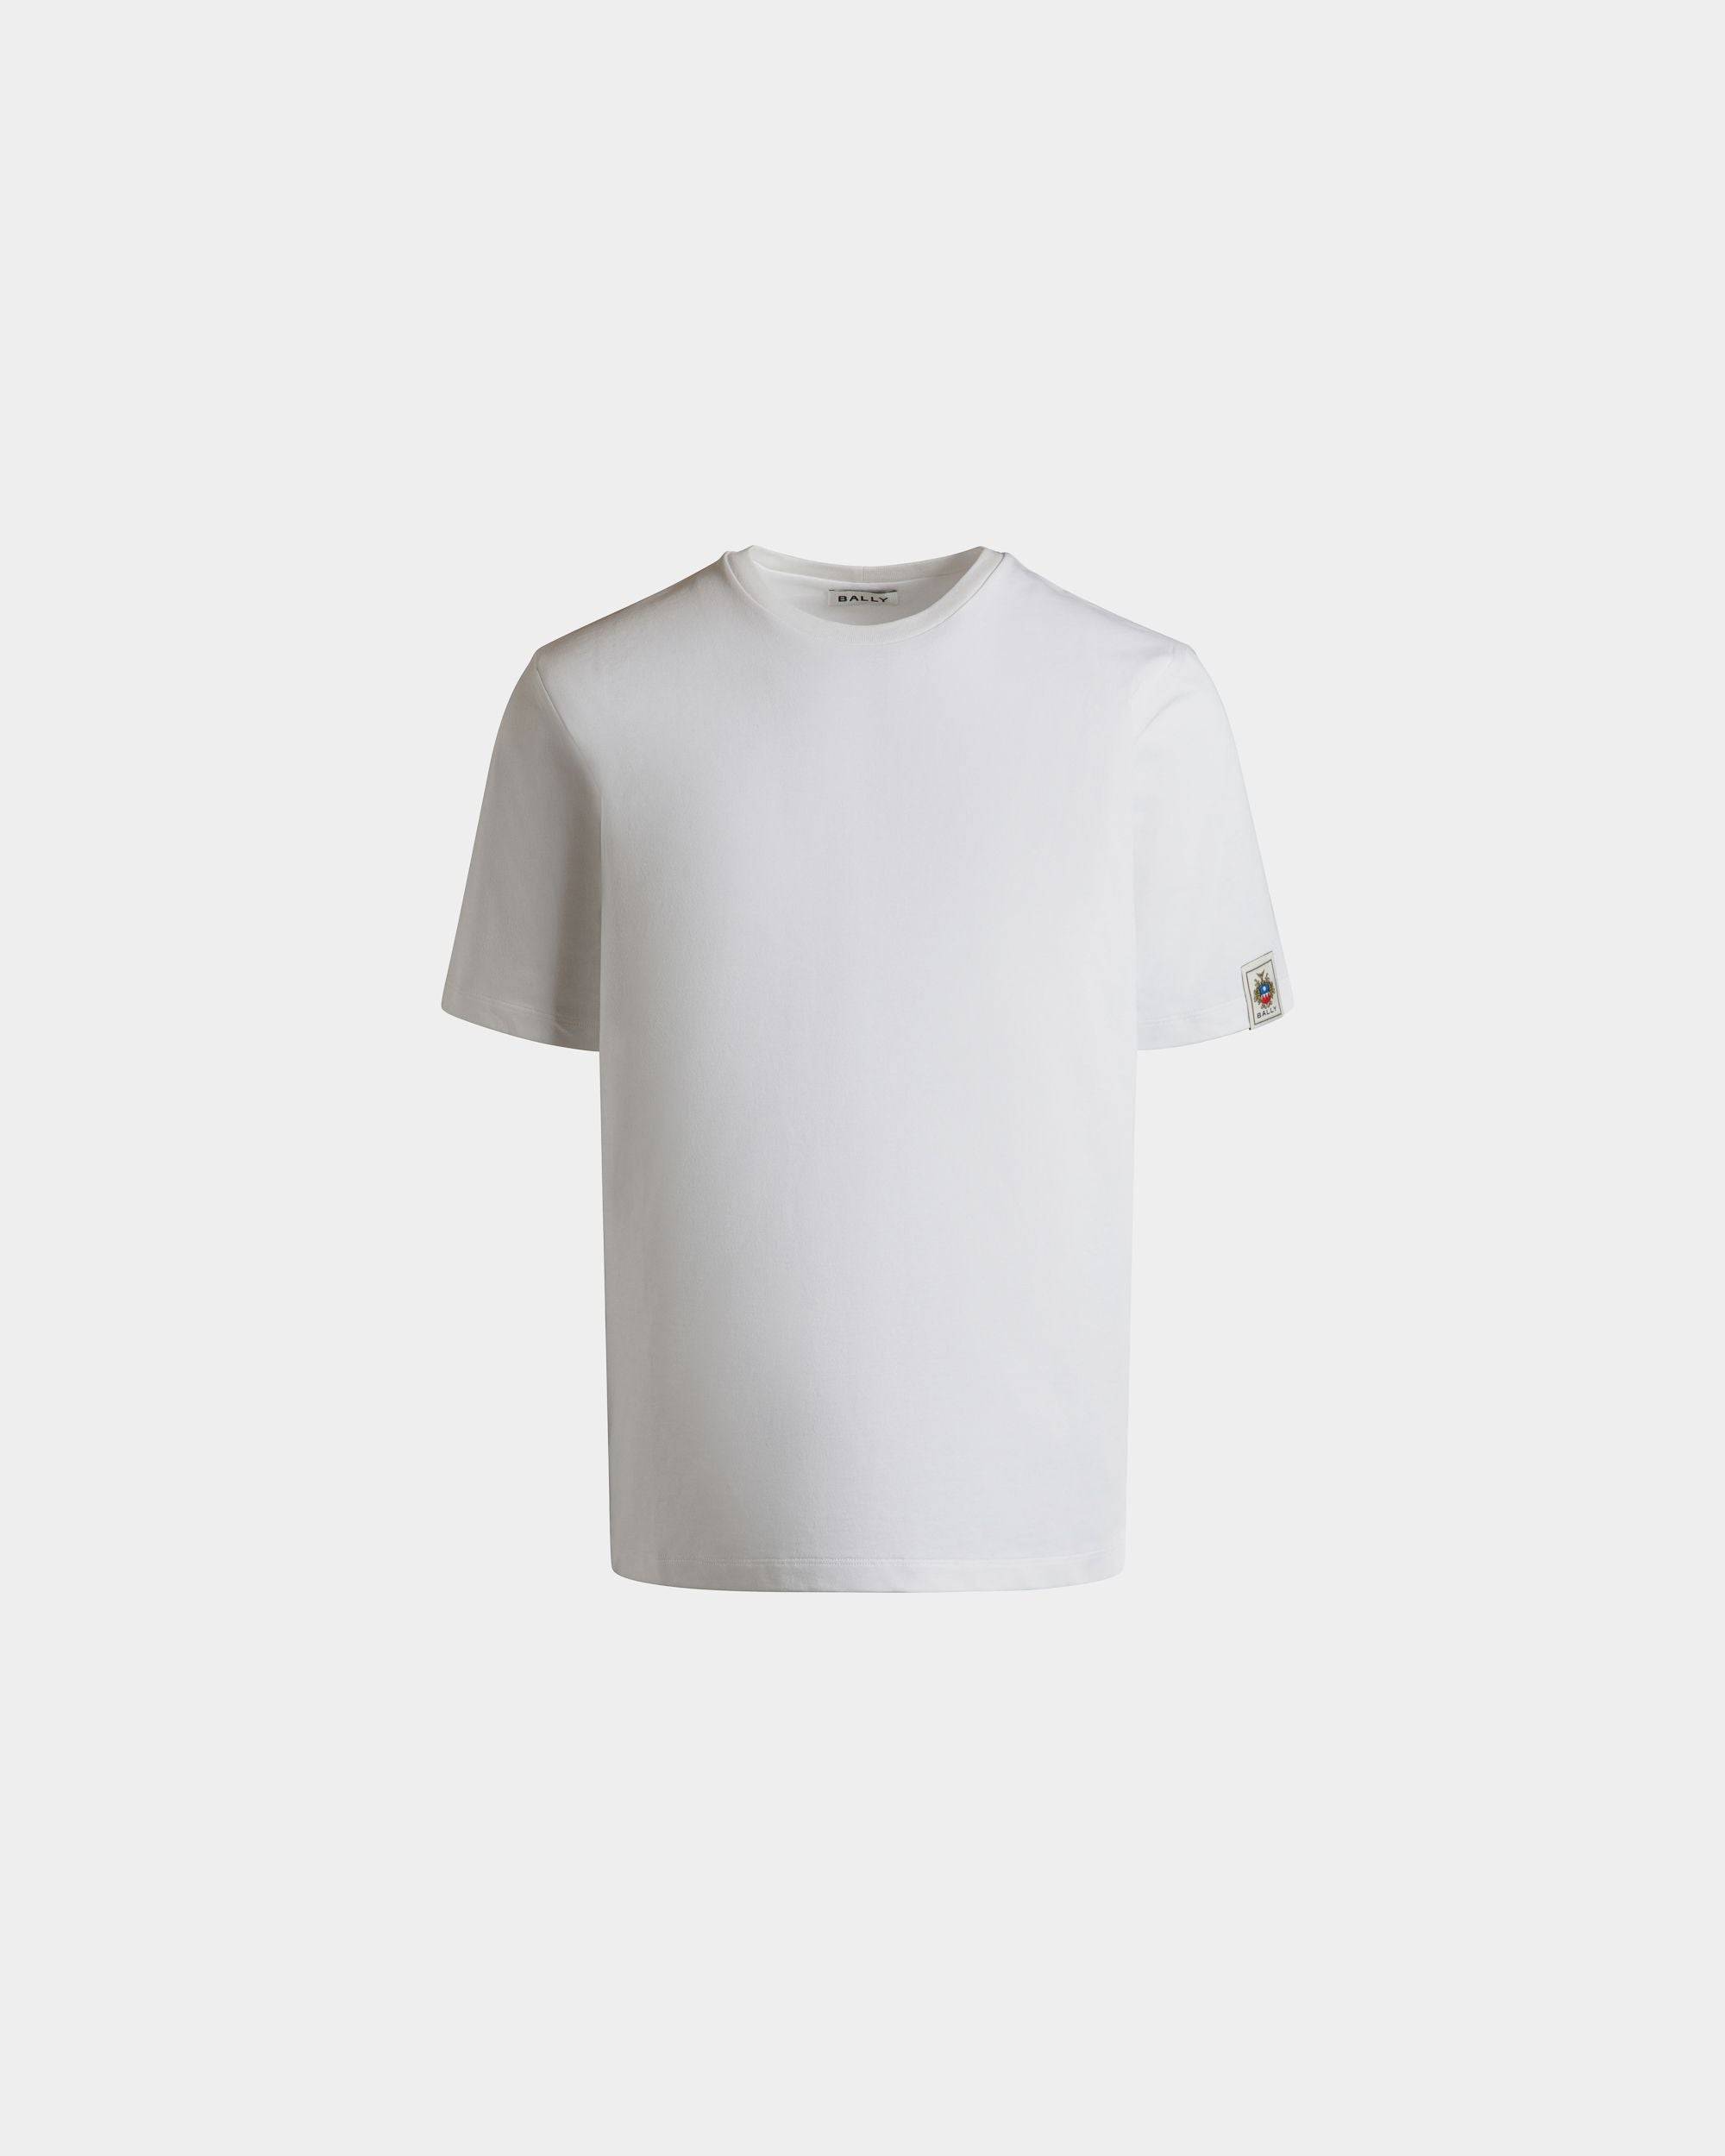 T-Shirt Aus Baumwolle In Weiß - Herren - Bally - 01